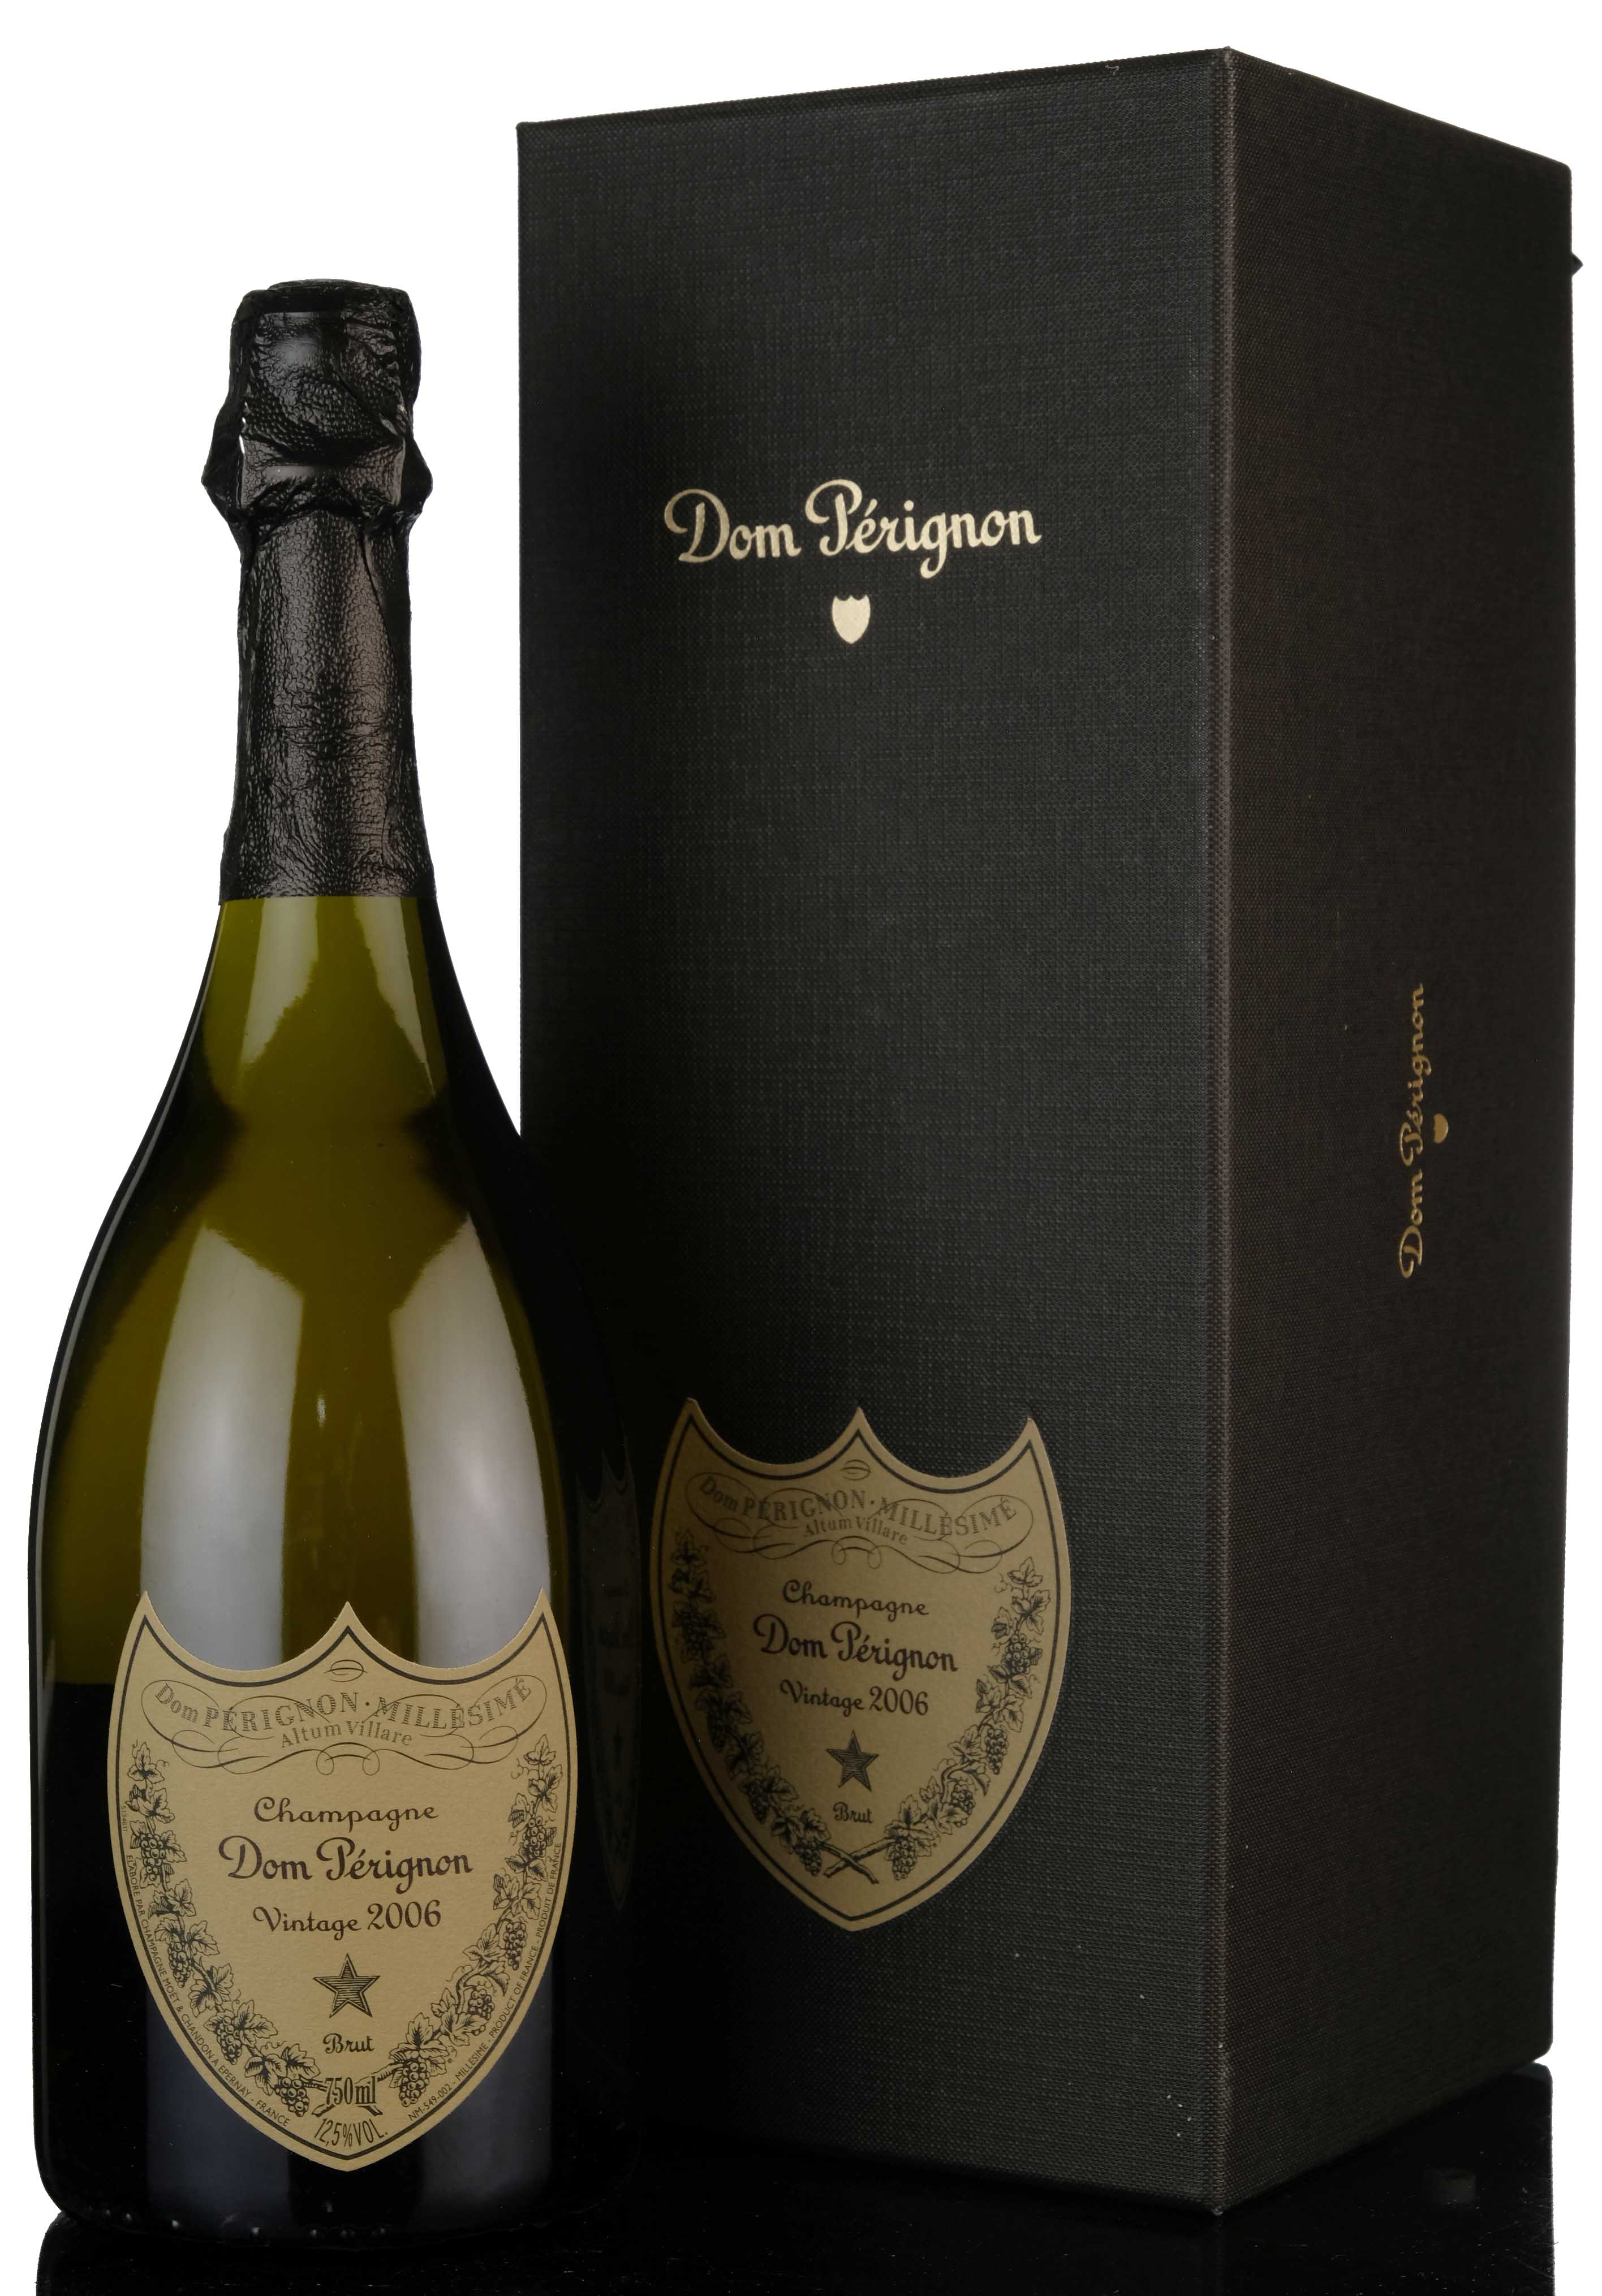 Moet & Chandon Dom Perignon 2006 Vintage Champagne